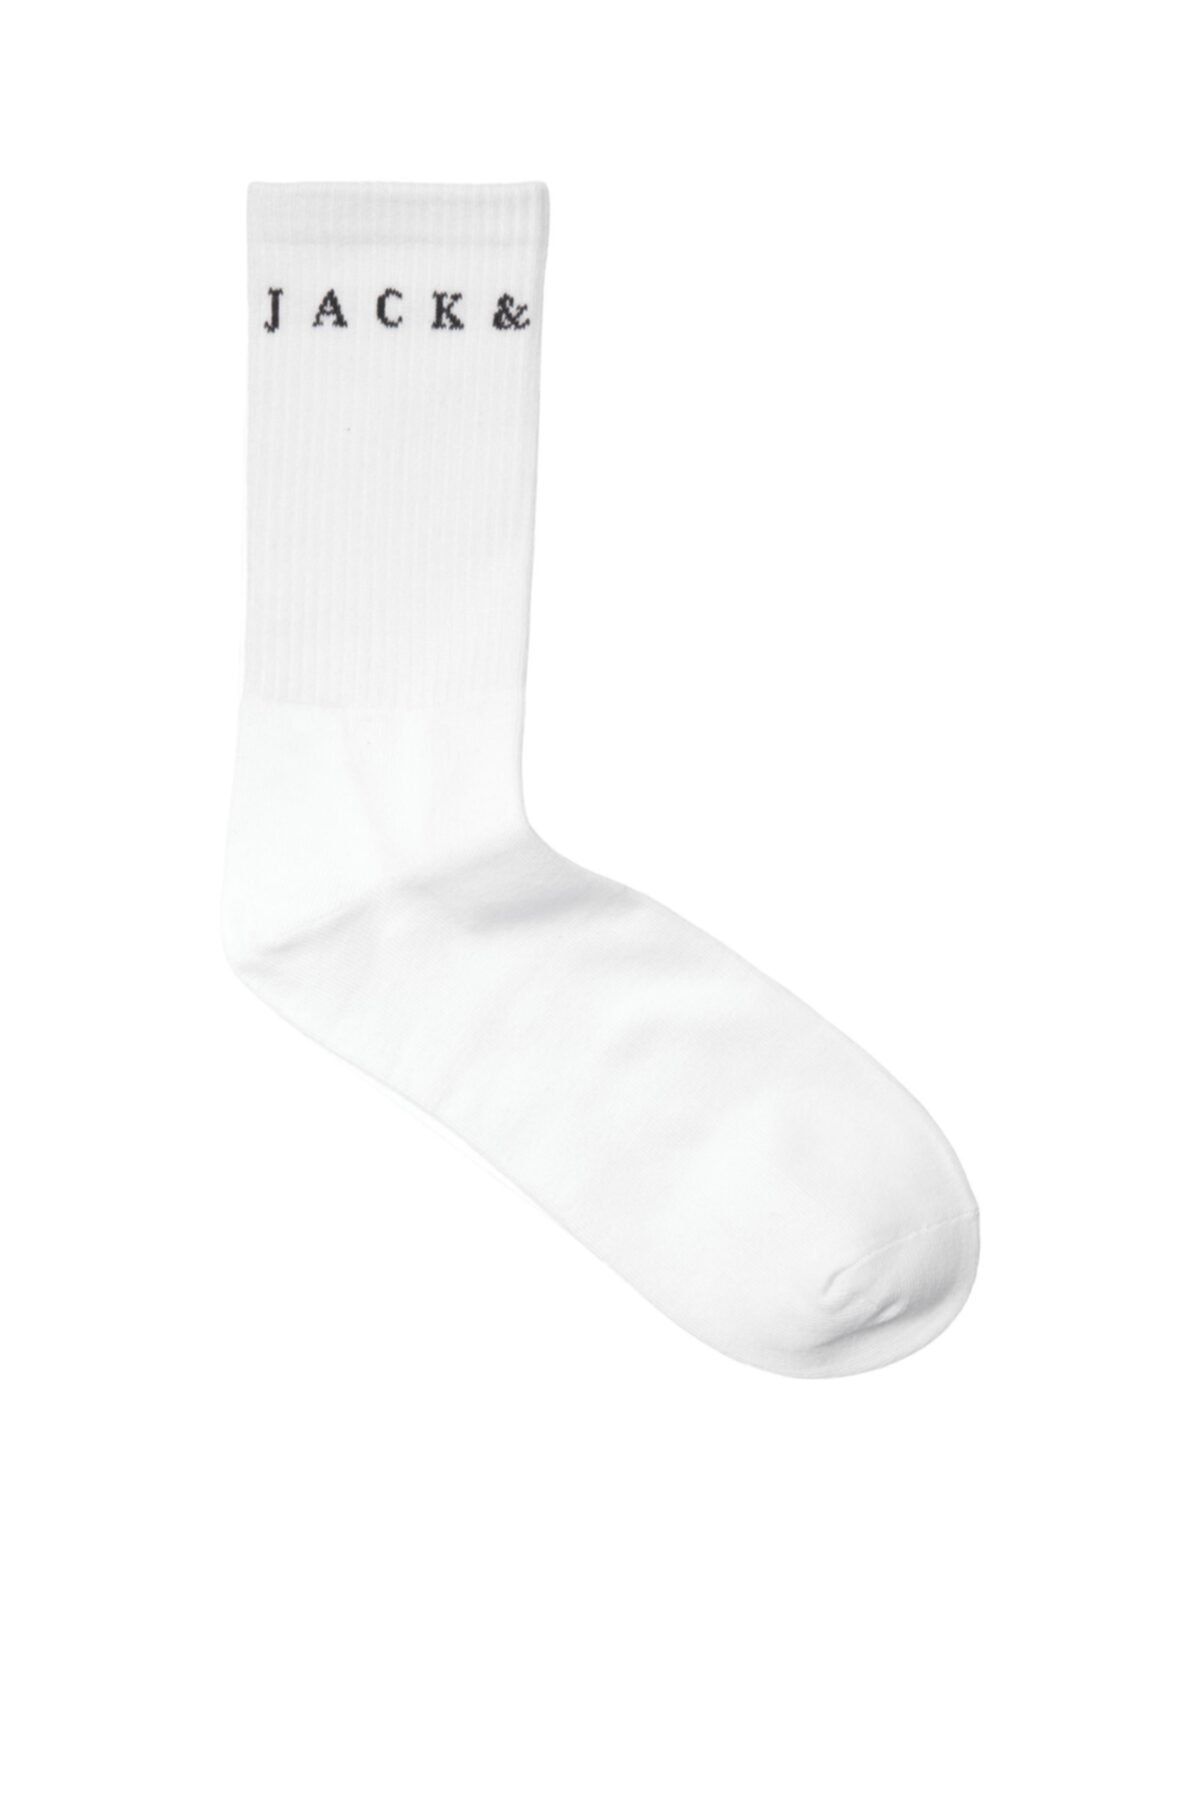 Jack & Jones Jack Jones Copenhagen Tennis Socks Erkek Beyaz Çorap 12204814-02